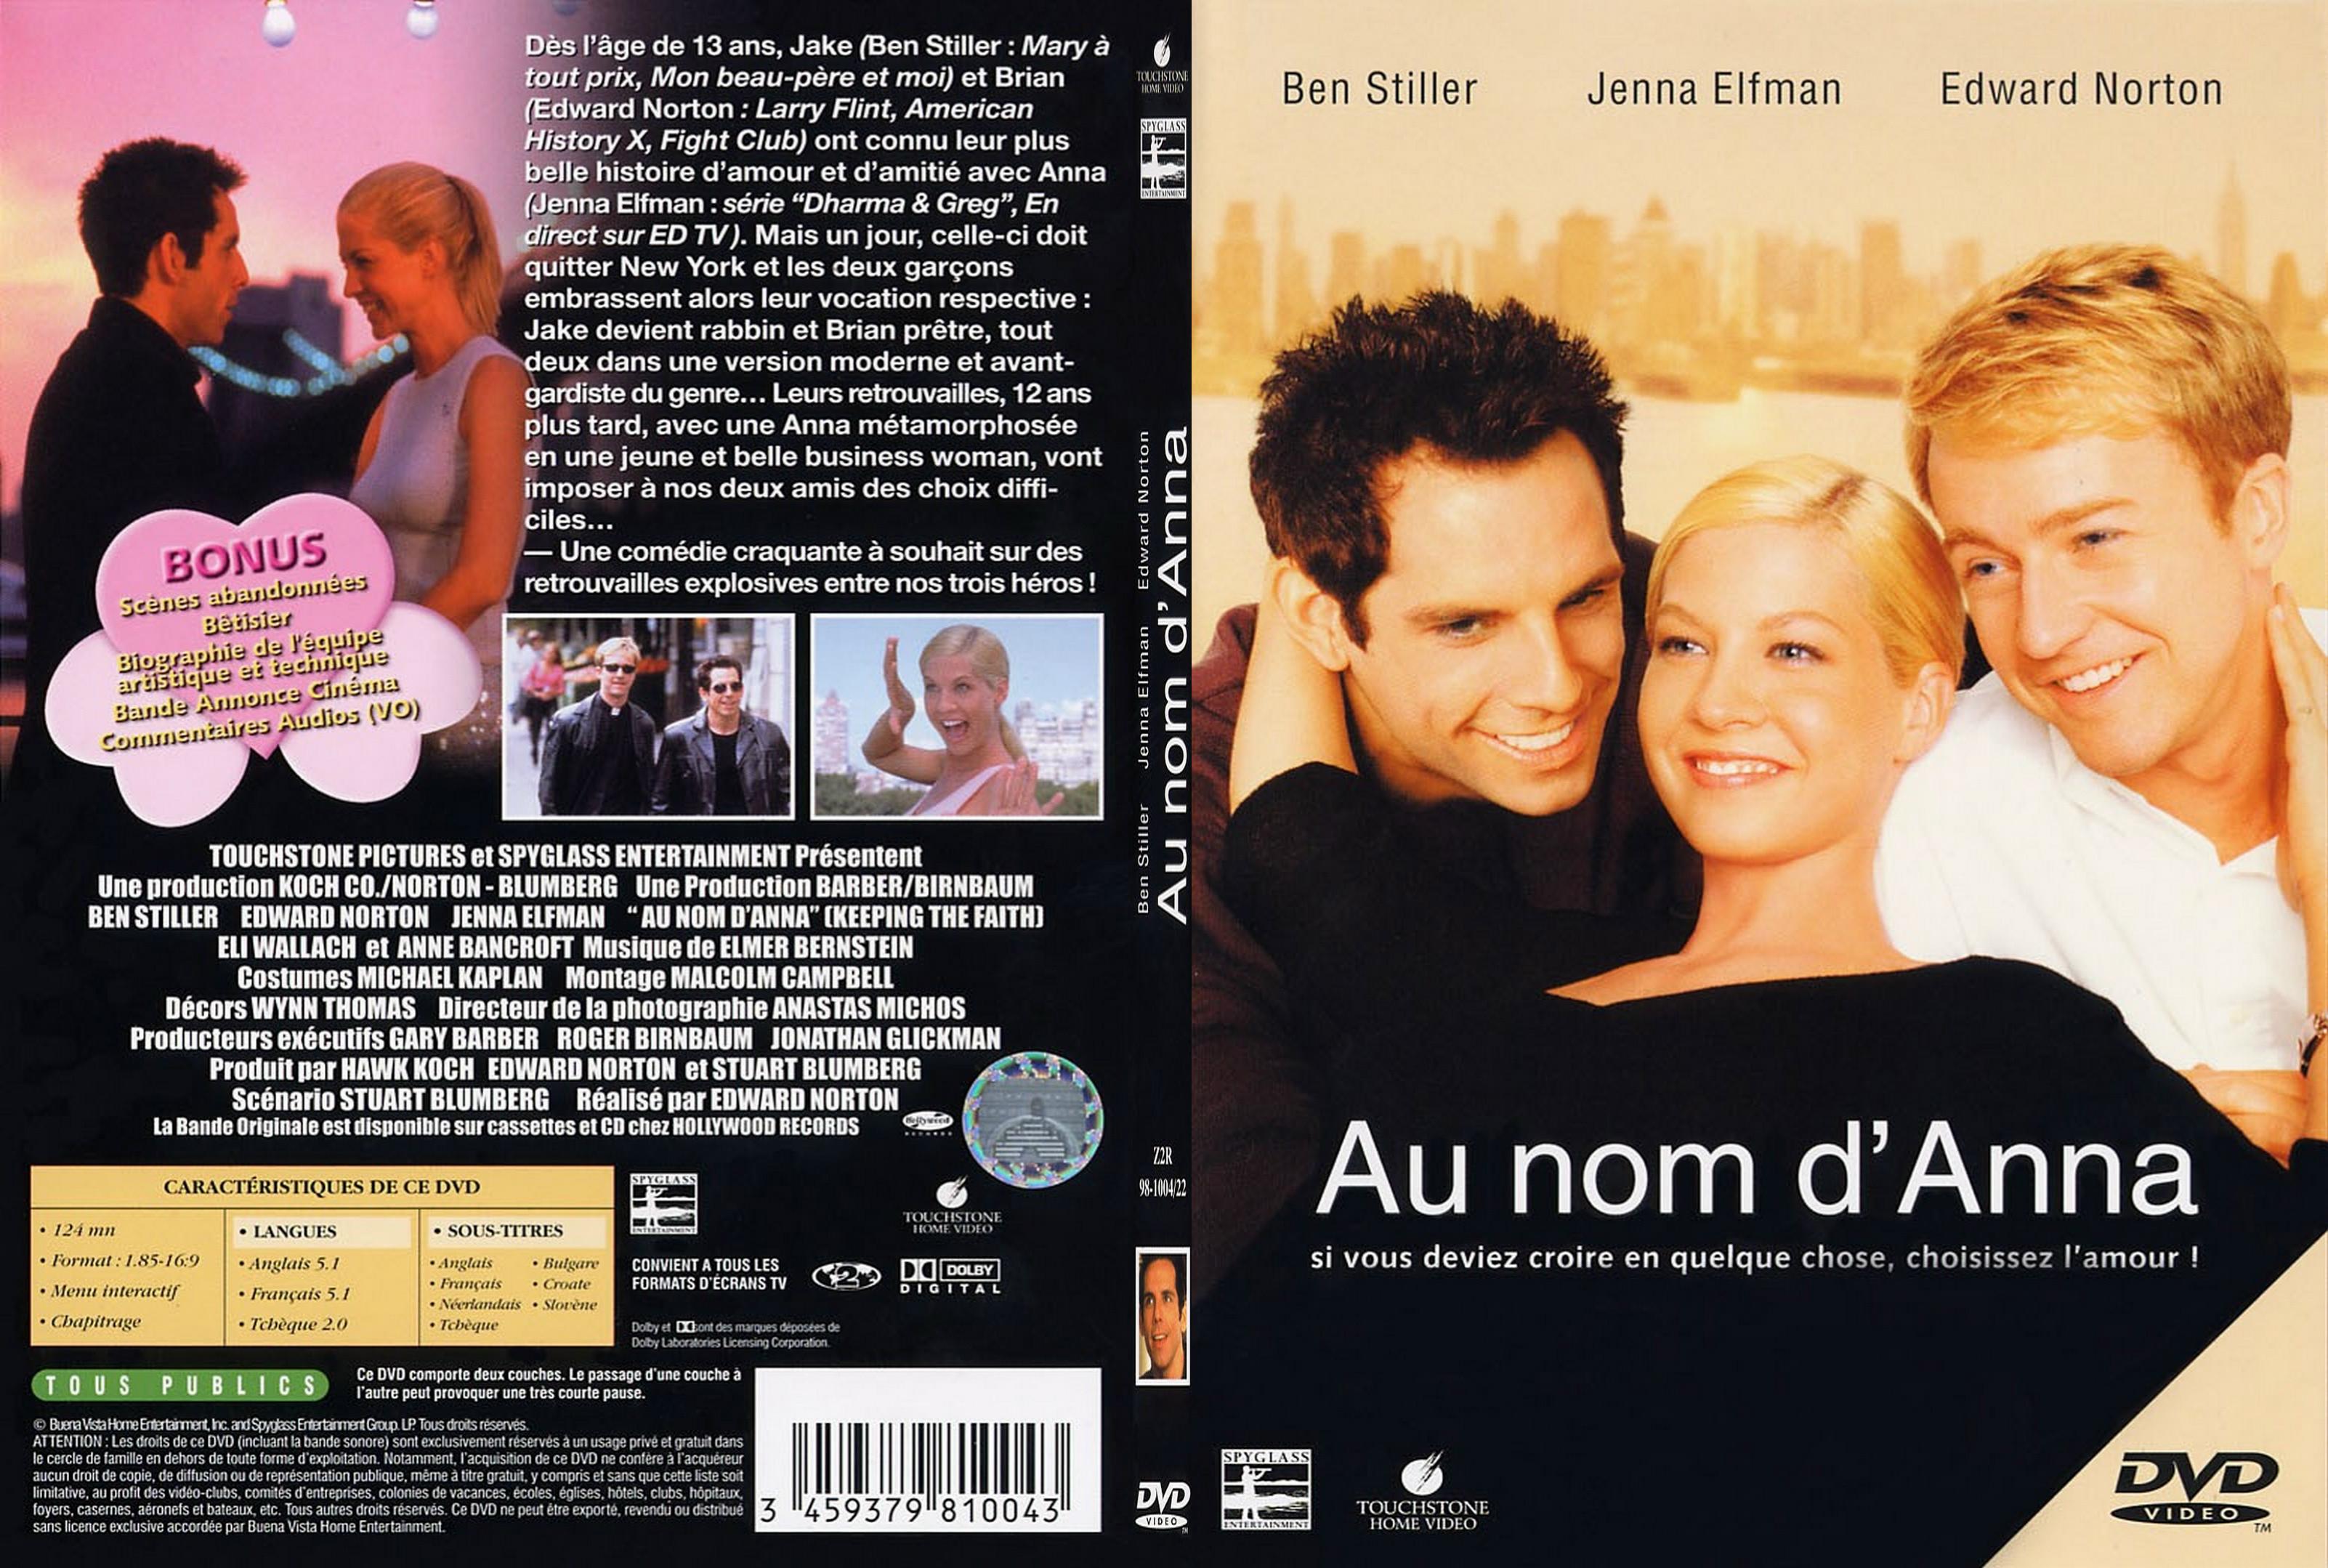 Jaquette DVD Au nom d